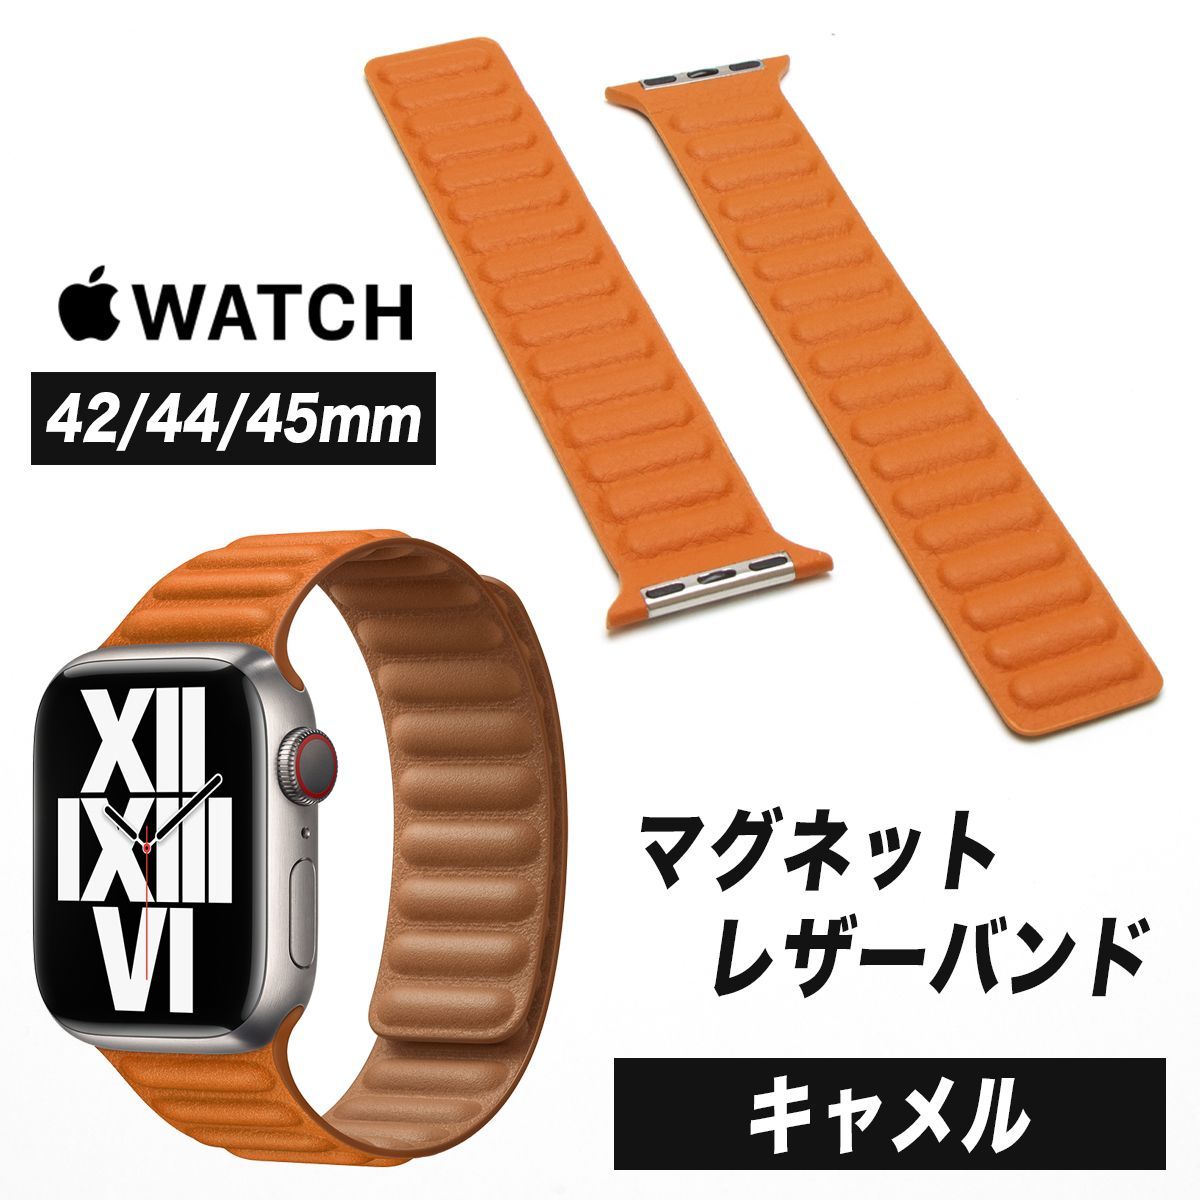 軽量+ストレッチ性+吸水速乾 Apple Watch バンド 合皮 42/44/45mm クラシックオレンジ 通販